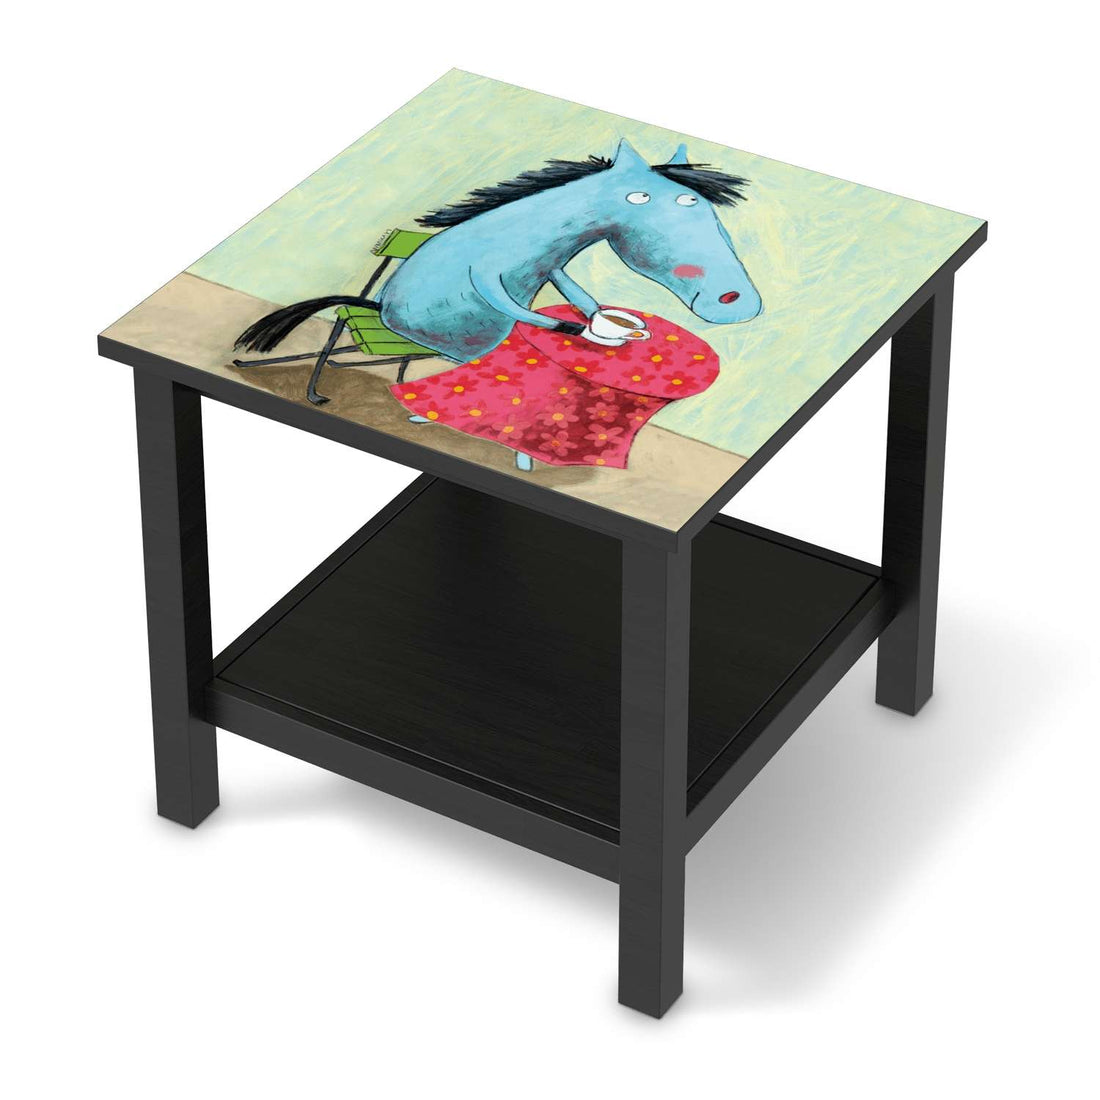 Möbel Klebefolie Pferd - IKEA Hemnes Beistelltisch 55x55 cm - schwarz